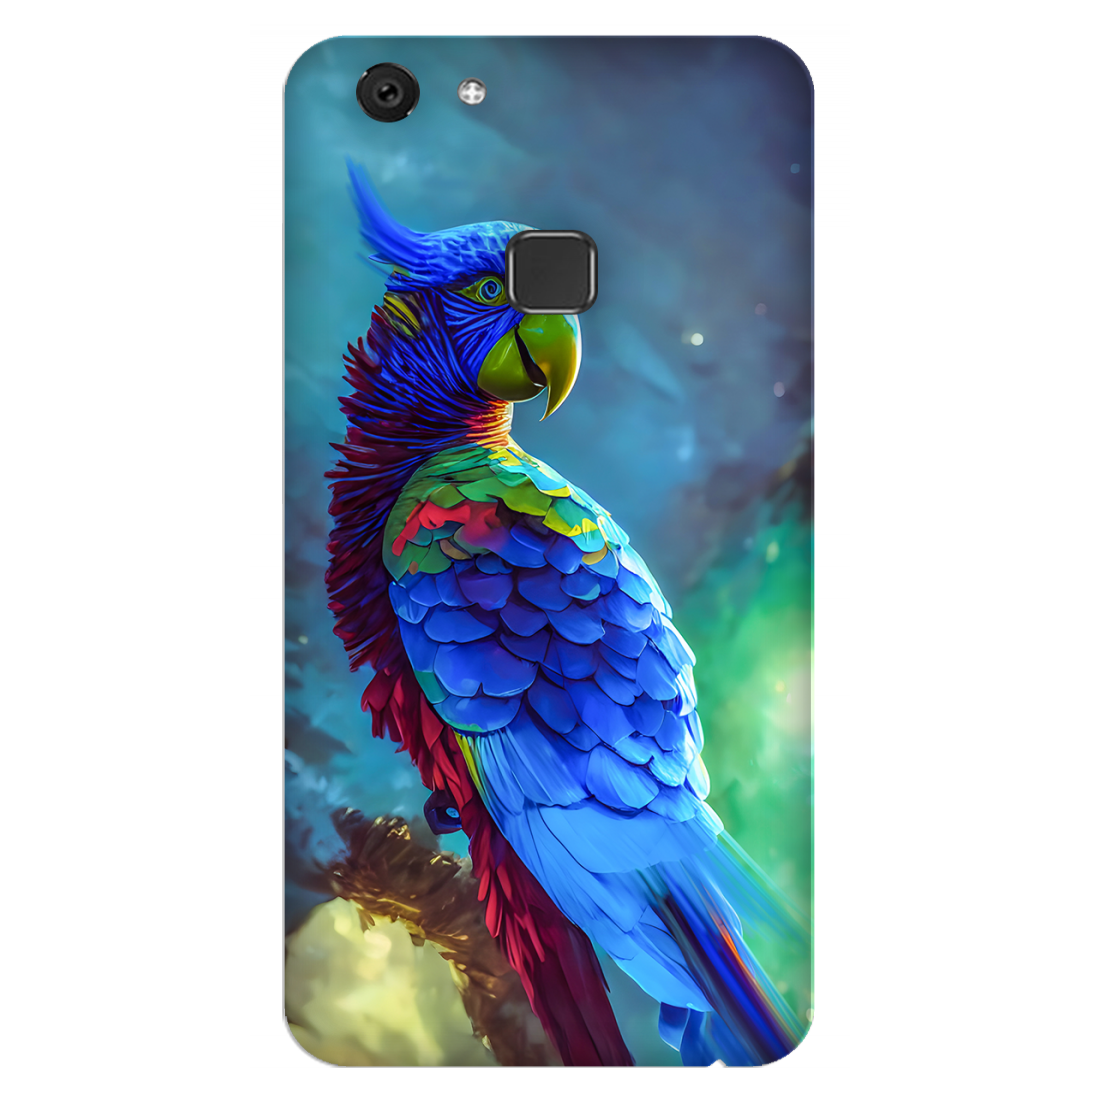 Vibrant Parrot in Dreamy Atmosphere Case Vivo V7 Plus